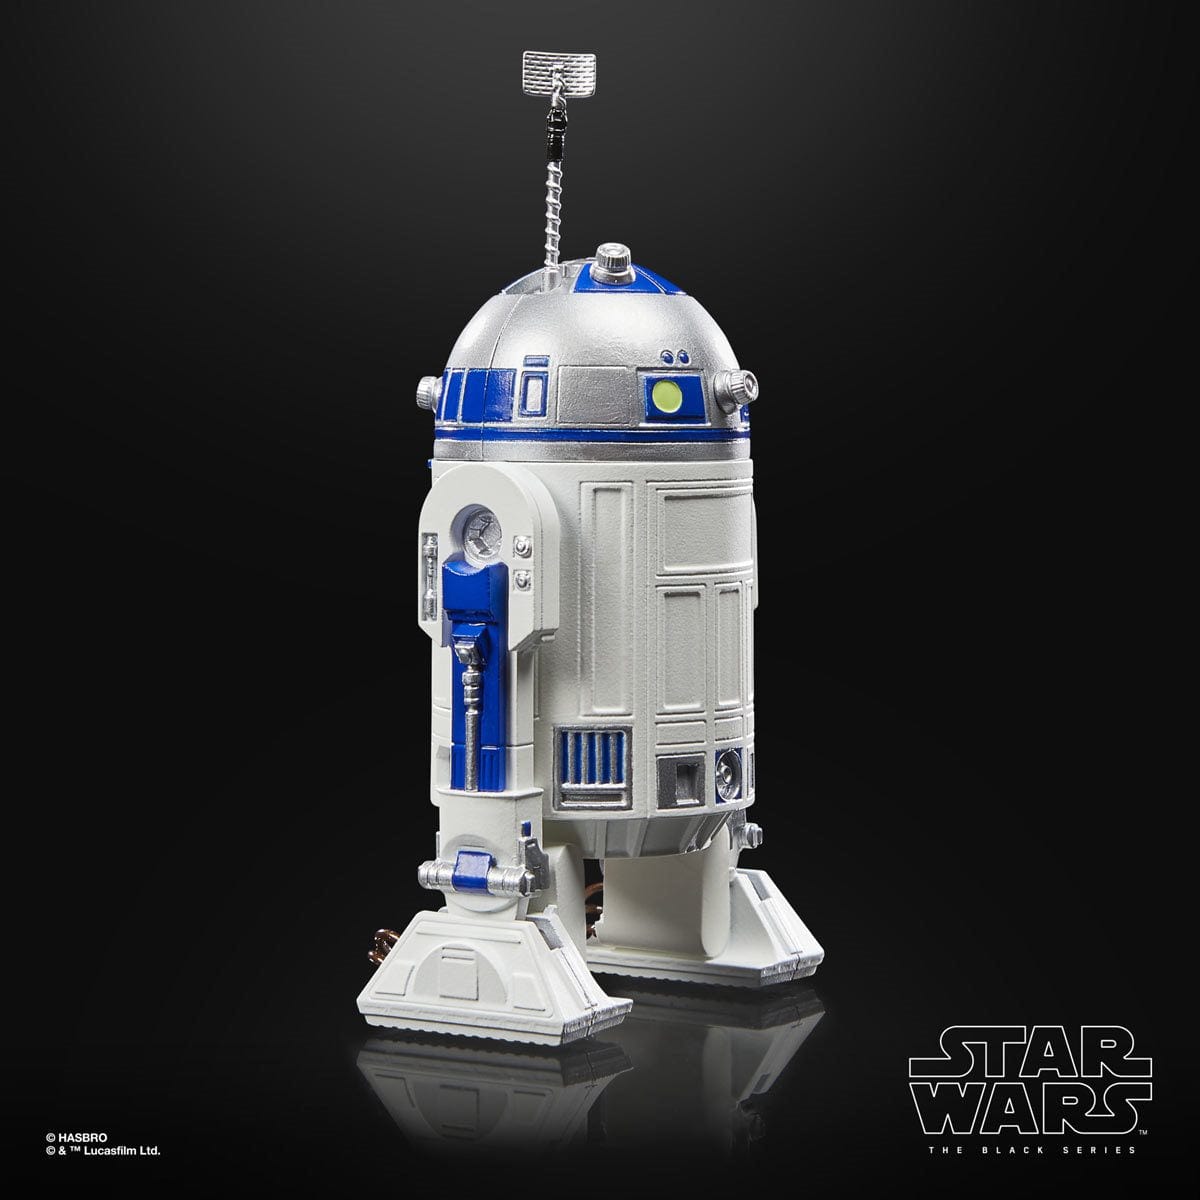 Star Wars The Black Series Return of the Jedi 40th Anniversary 6-Inch R2-D2 - Artoo-Deetoo